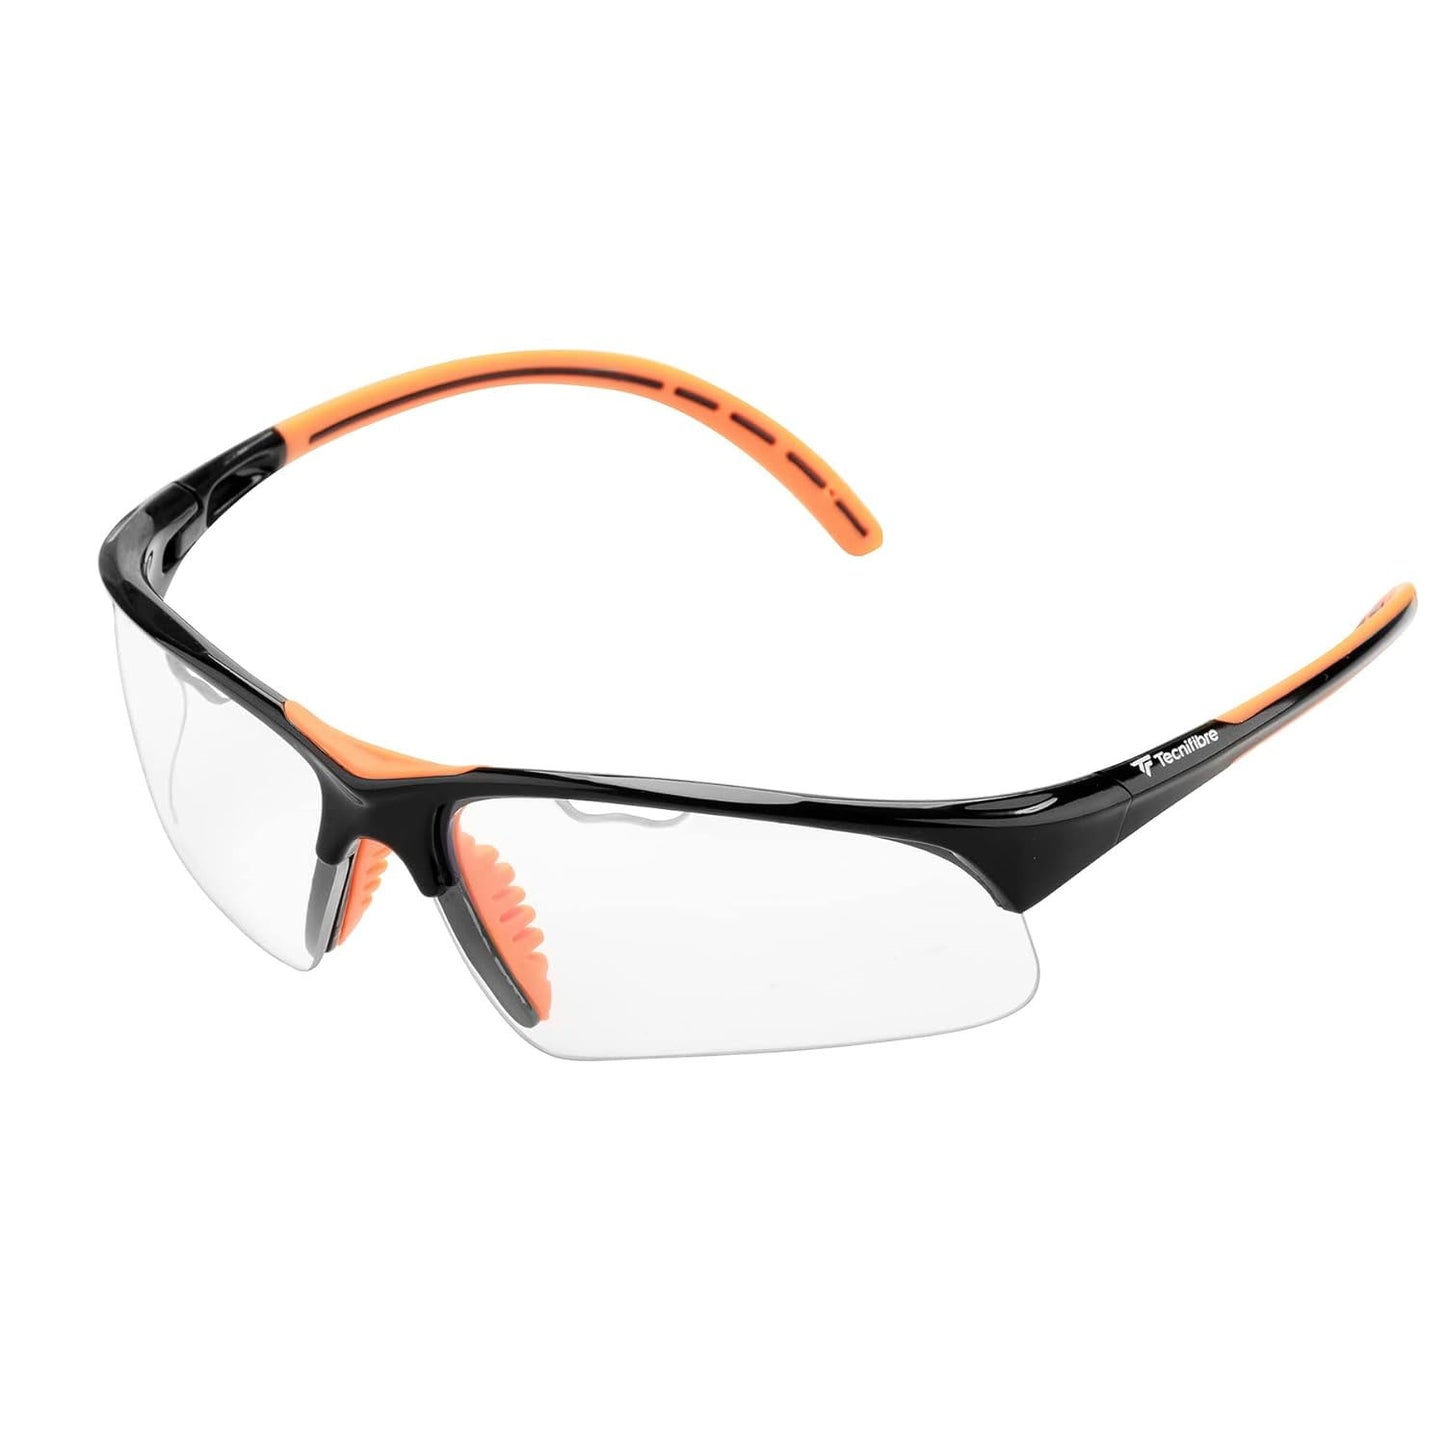 Tecnifibre Squash Protection Glasses - Best Price online Prokicksports.com